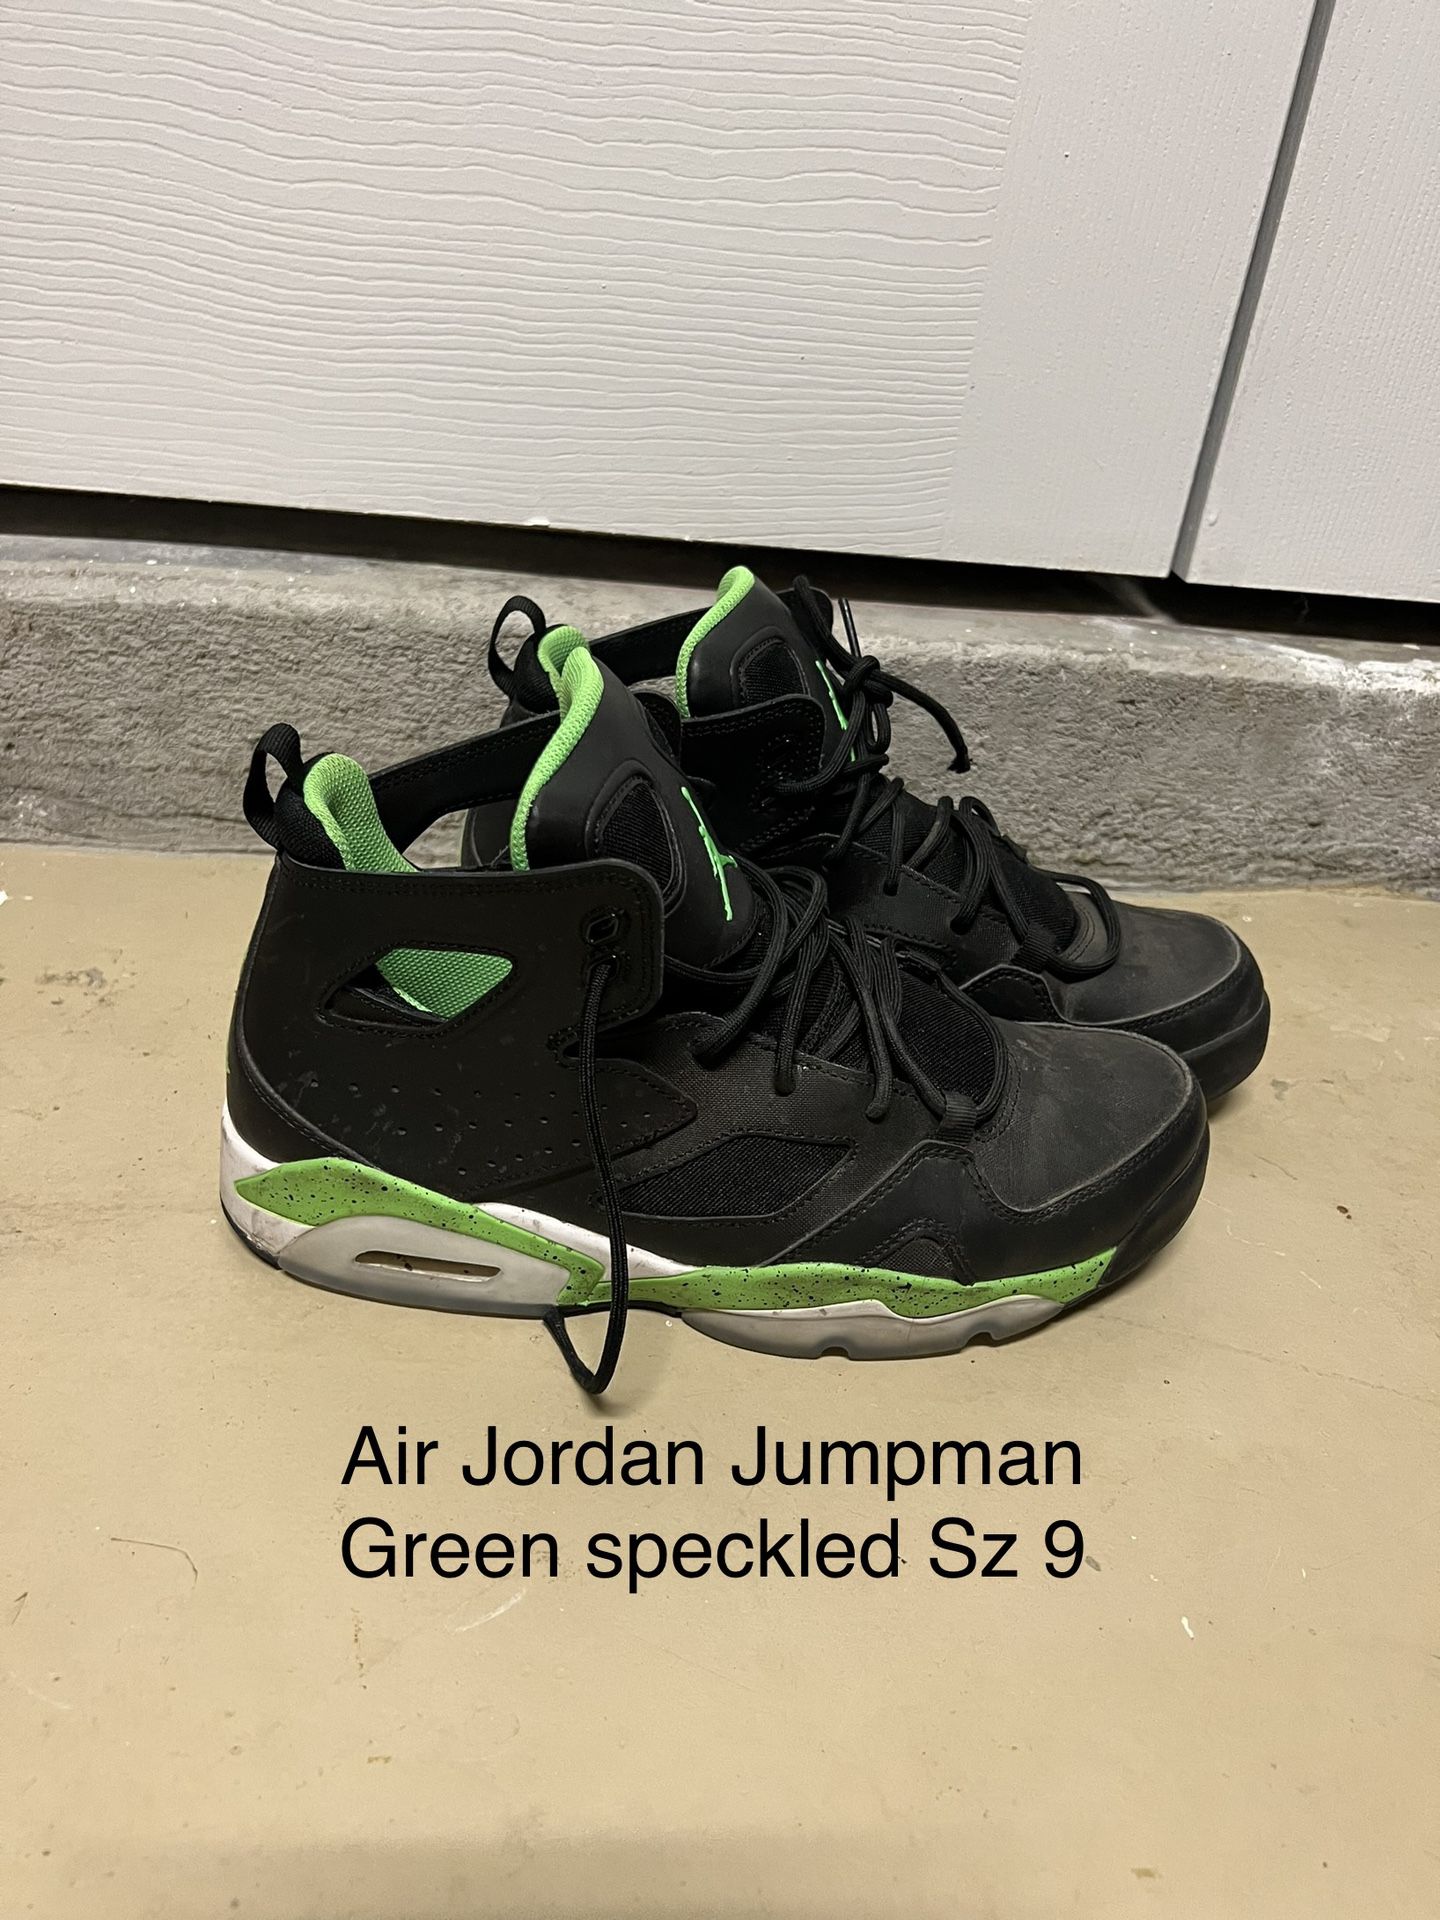 Air Jordan Jumpman Series Sz 9